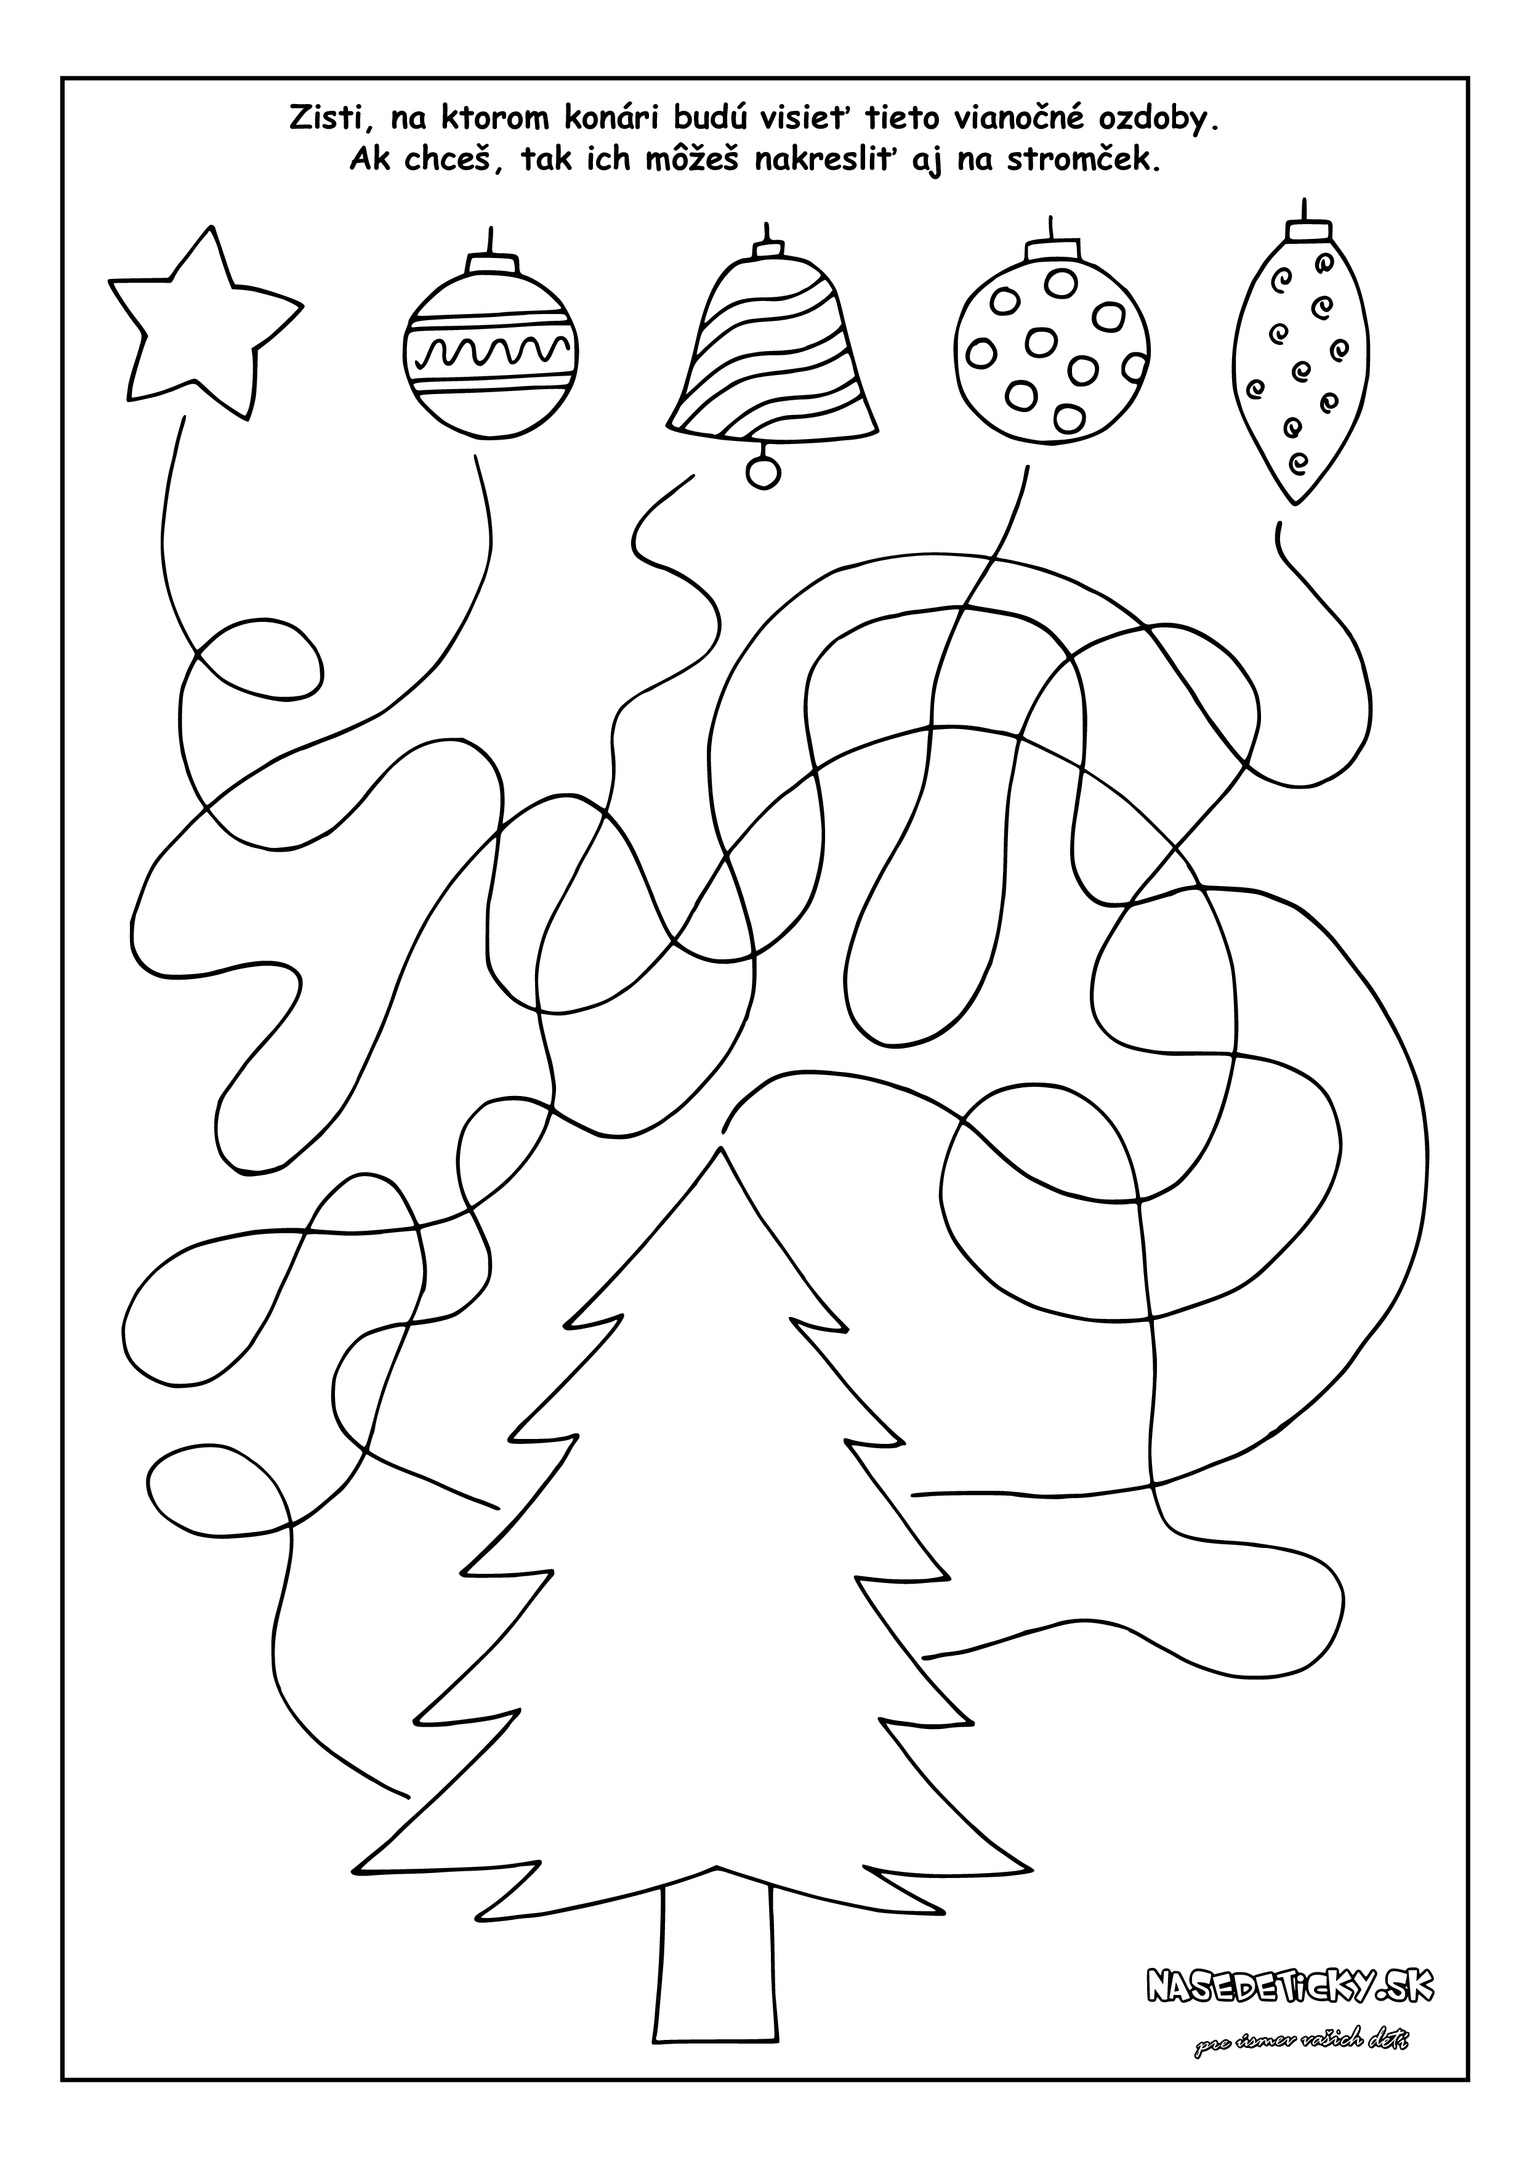 Бесплатные раскраски для детей на новогоднюю тематику: найди пару, пройди лабиринт, соедини точки и посчитай сколько. Развивай умение соединять, считать и творчески мыслить! (задания)